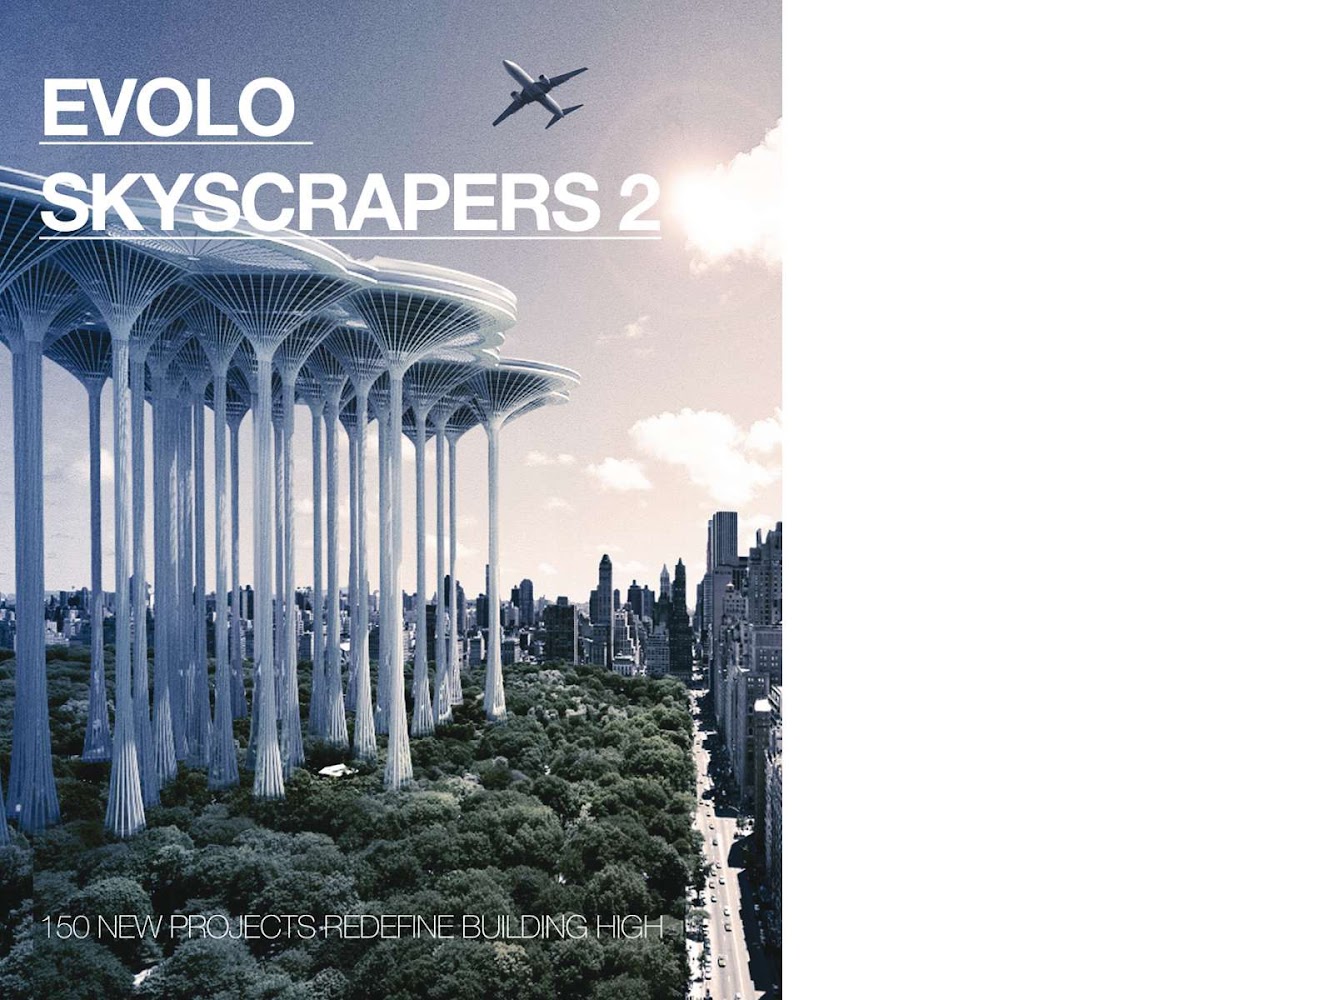 The winners of eVolo Skyscraper Competition